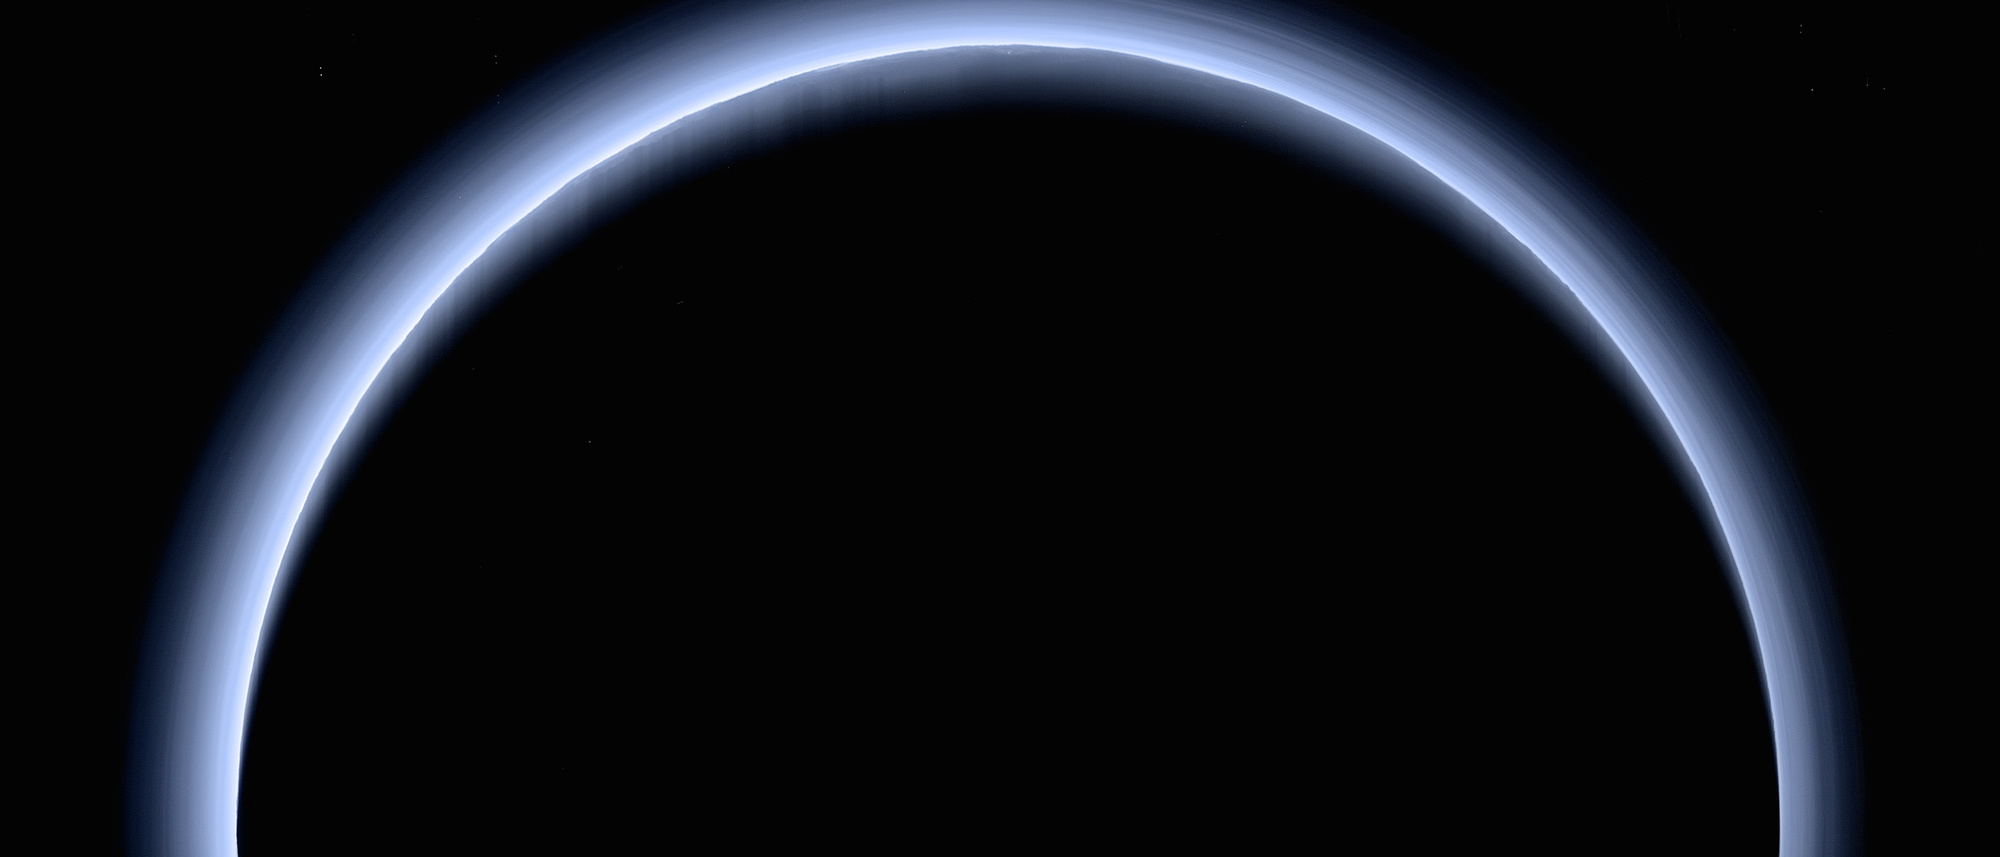 Ein Rückblick von New Horizons auf Pluto zeigt dessen Atmosphäre